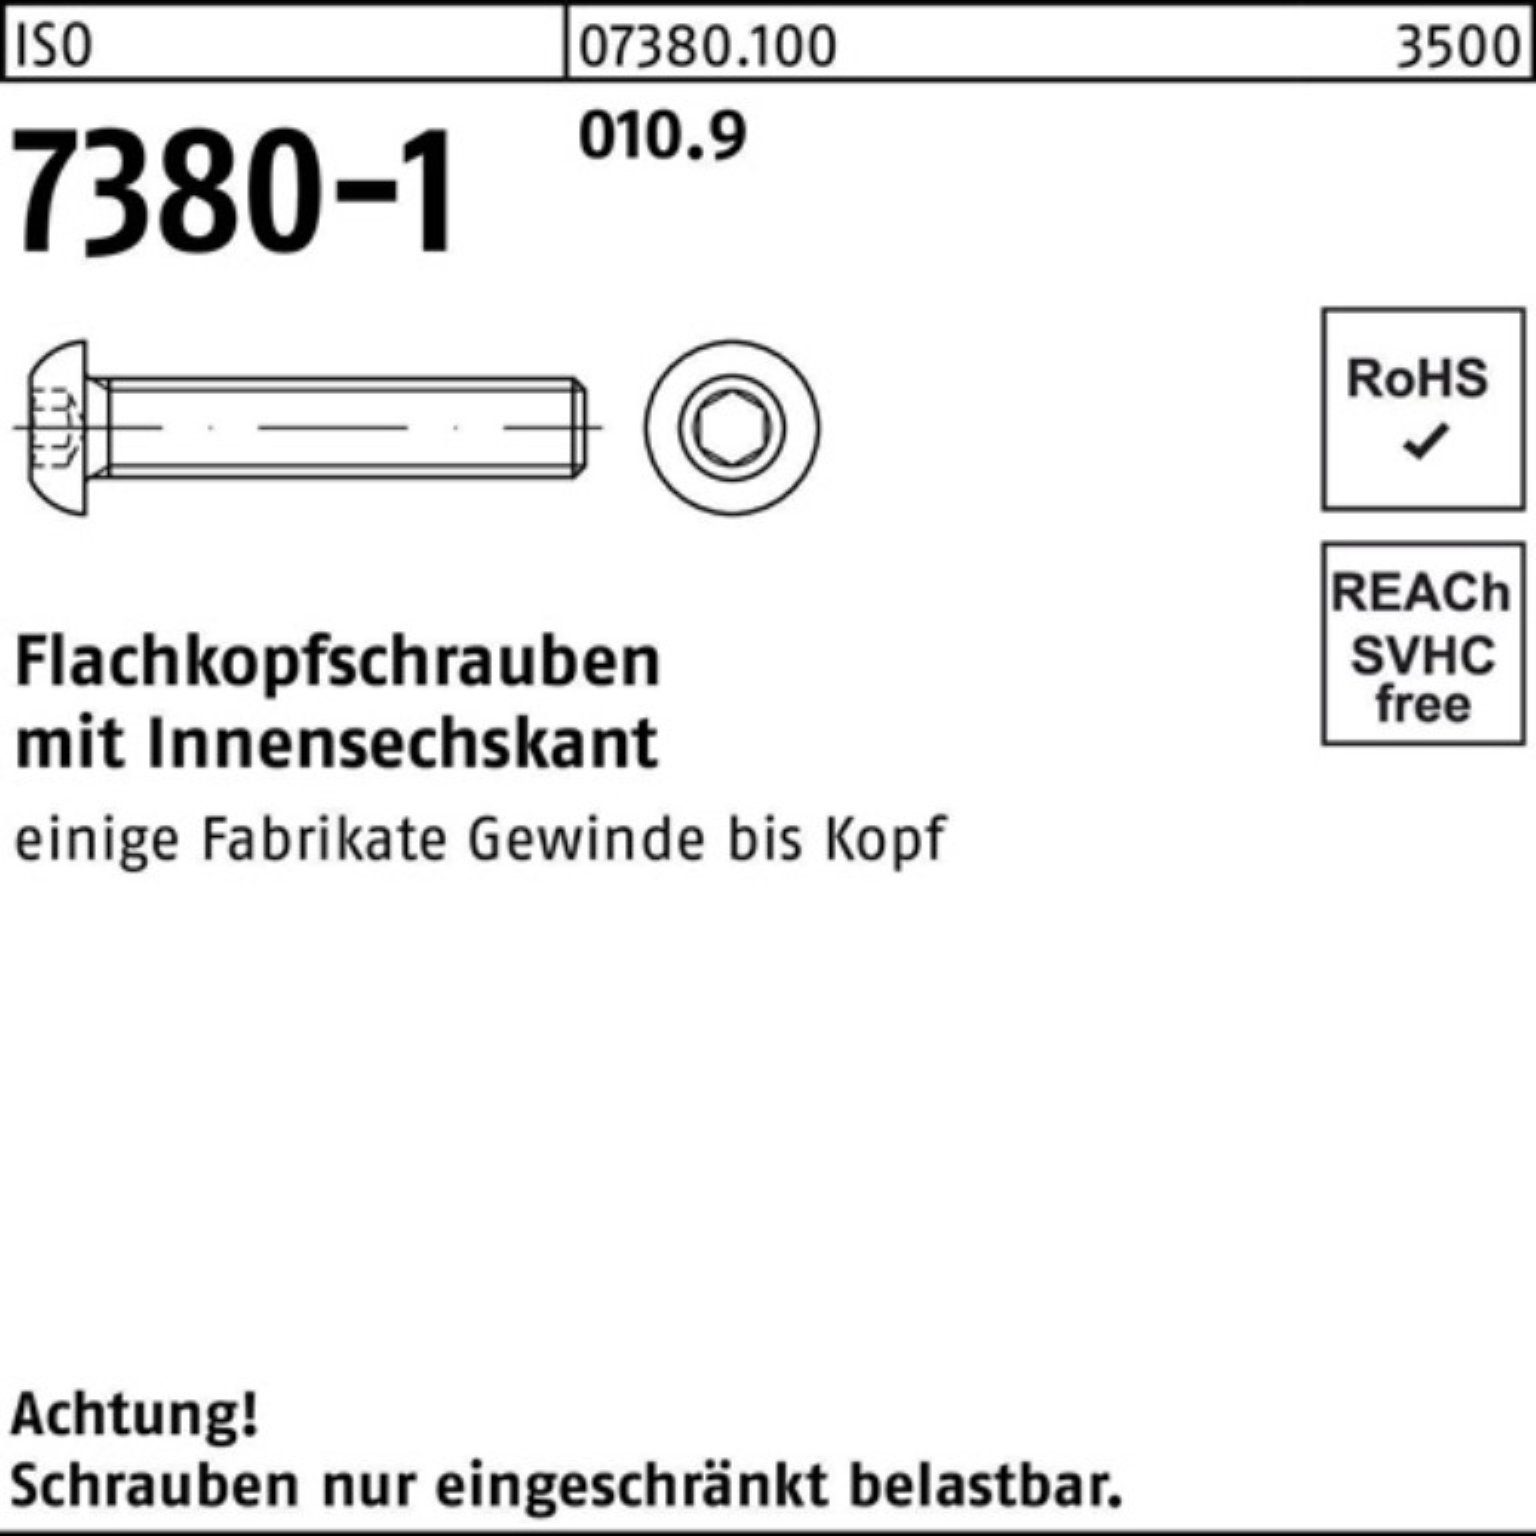 St Innen-6kt M4x 500er 25 Pack Schraube Reyher Flachkopfschraube 010.9 ISO 500 7380-1